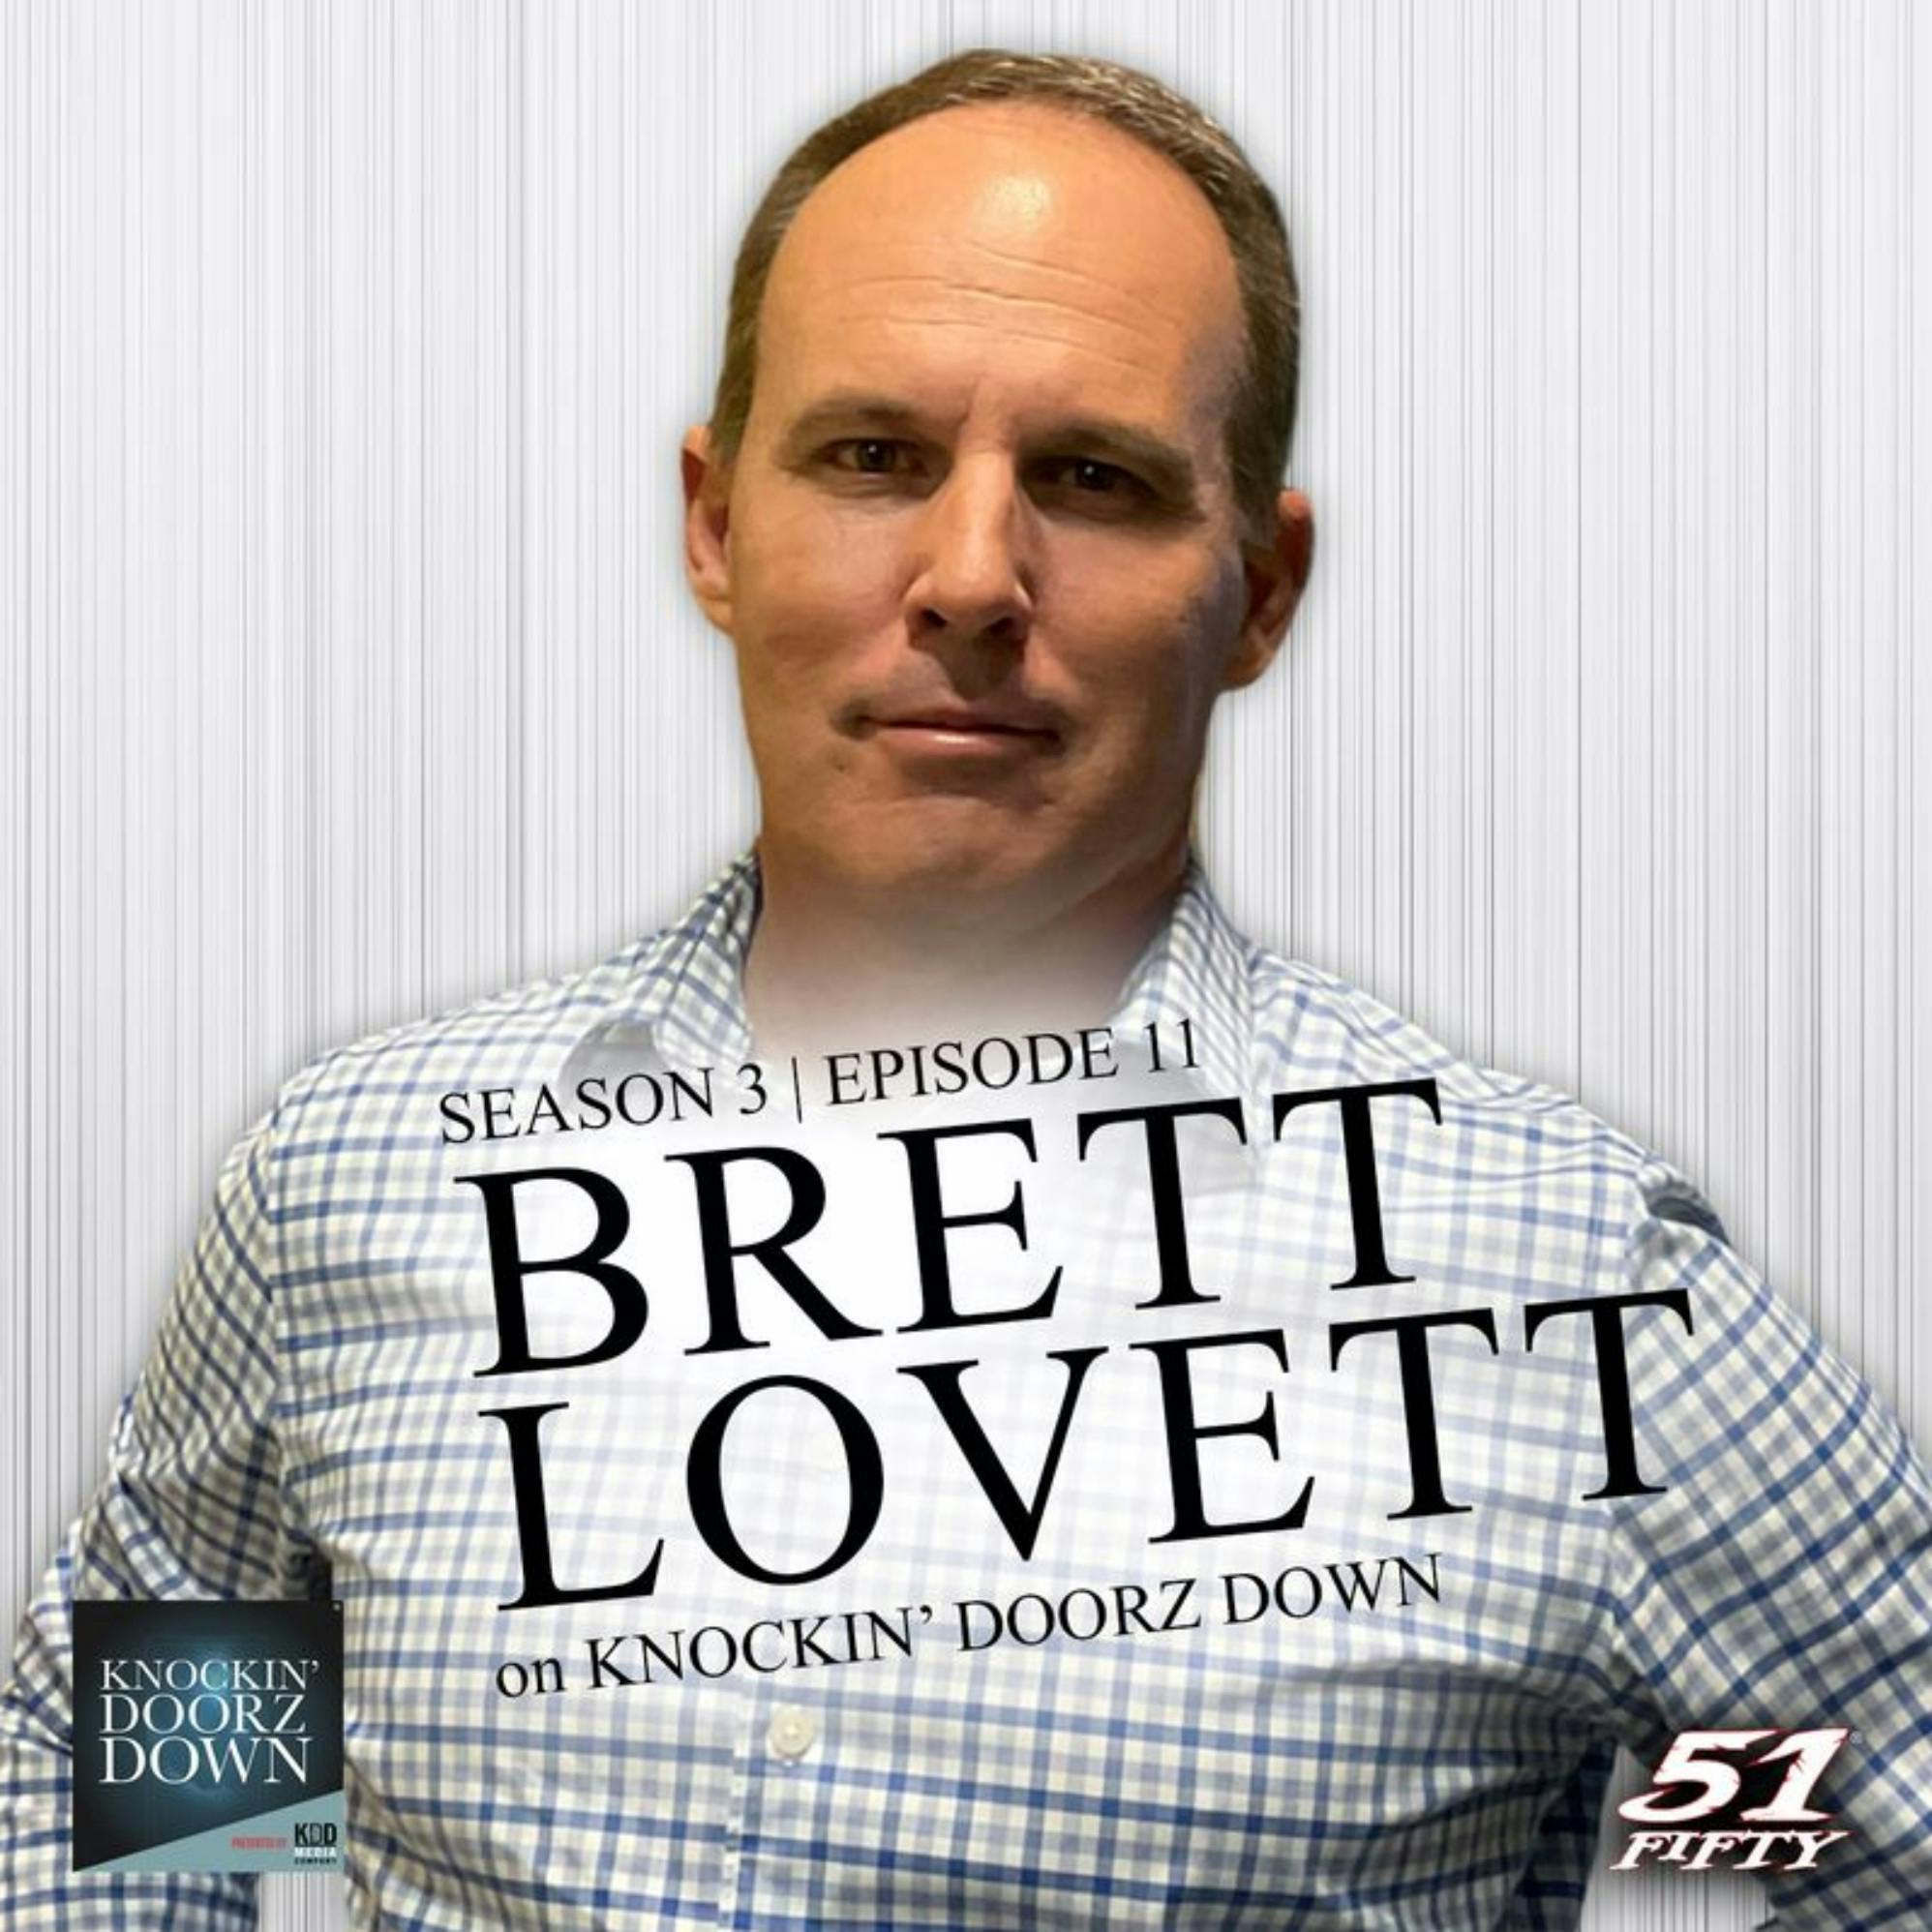 Brett Lovett | Reconciliation after Trauma, addiction, divorce, Isolation & The Power of Mentoring